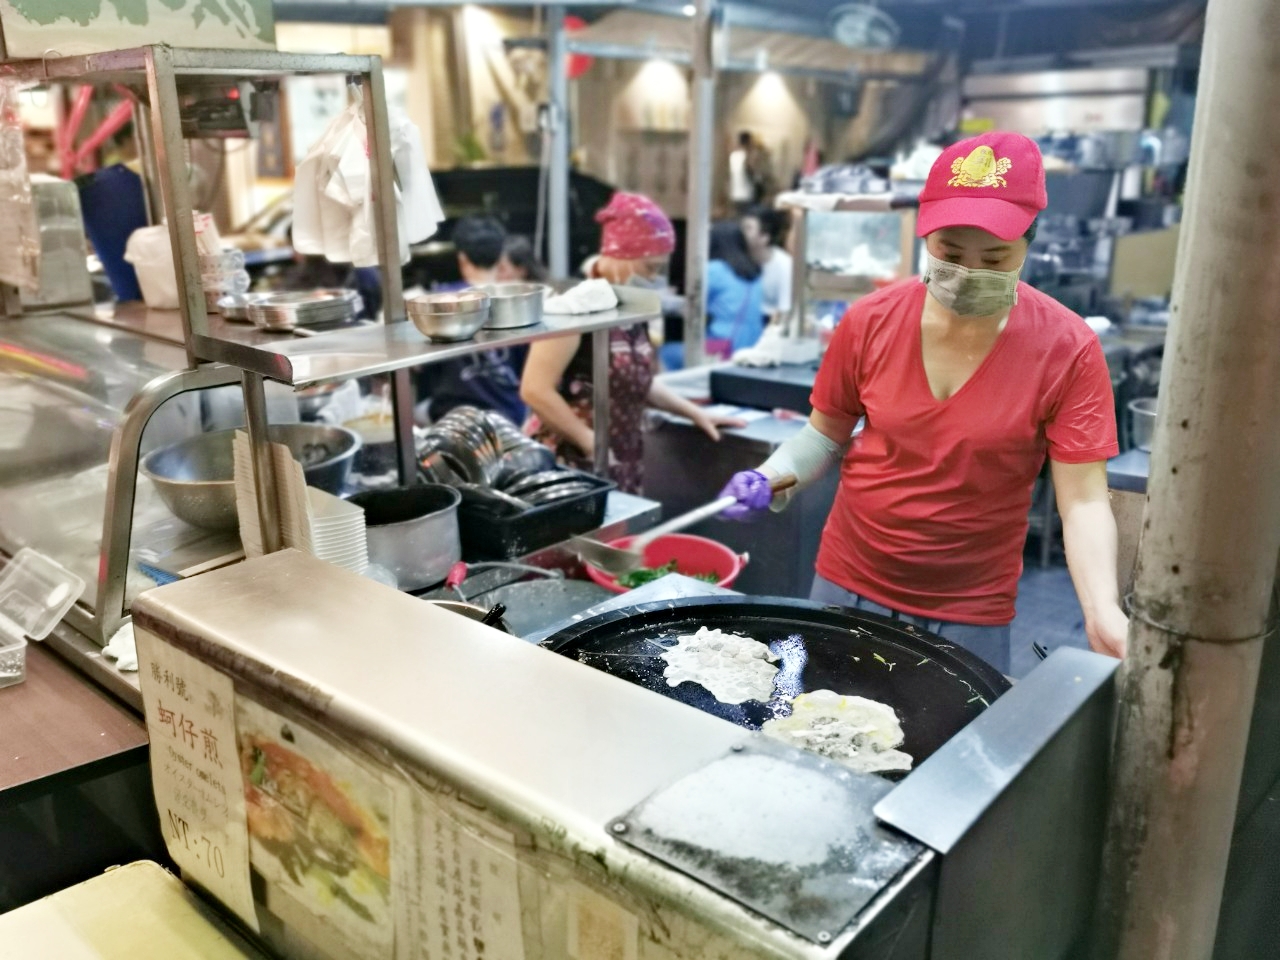 遼寧夜市必吃：勝利號蚵仔煎、客家自製湯圓、北海道活魷魚